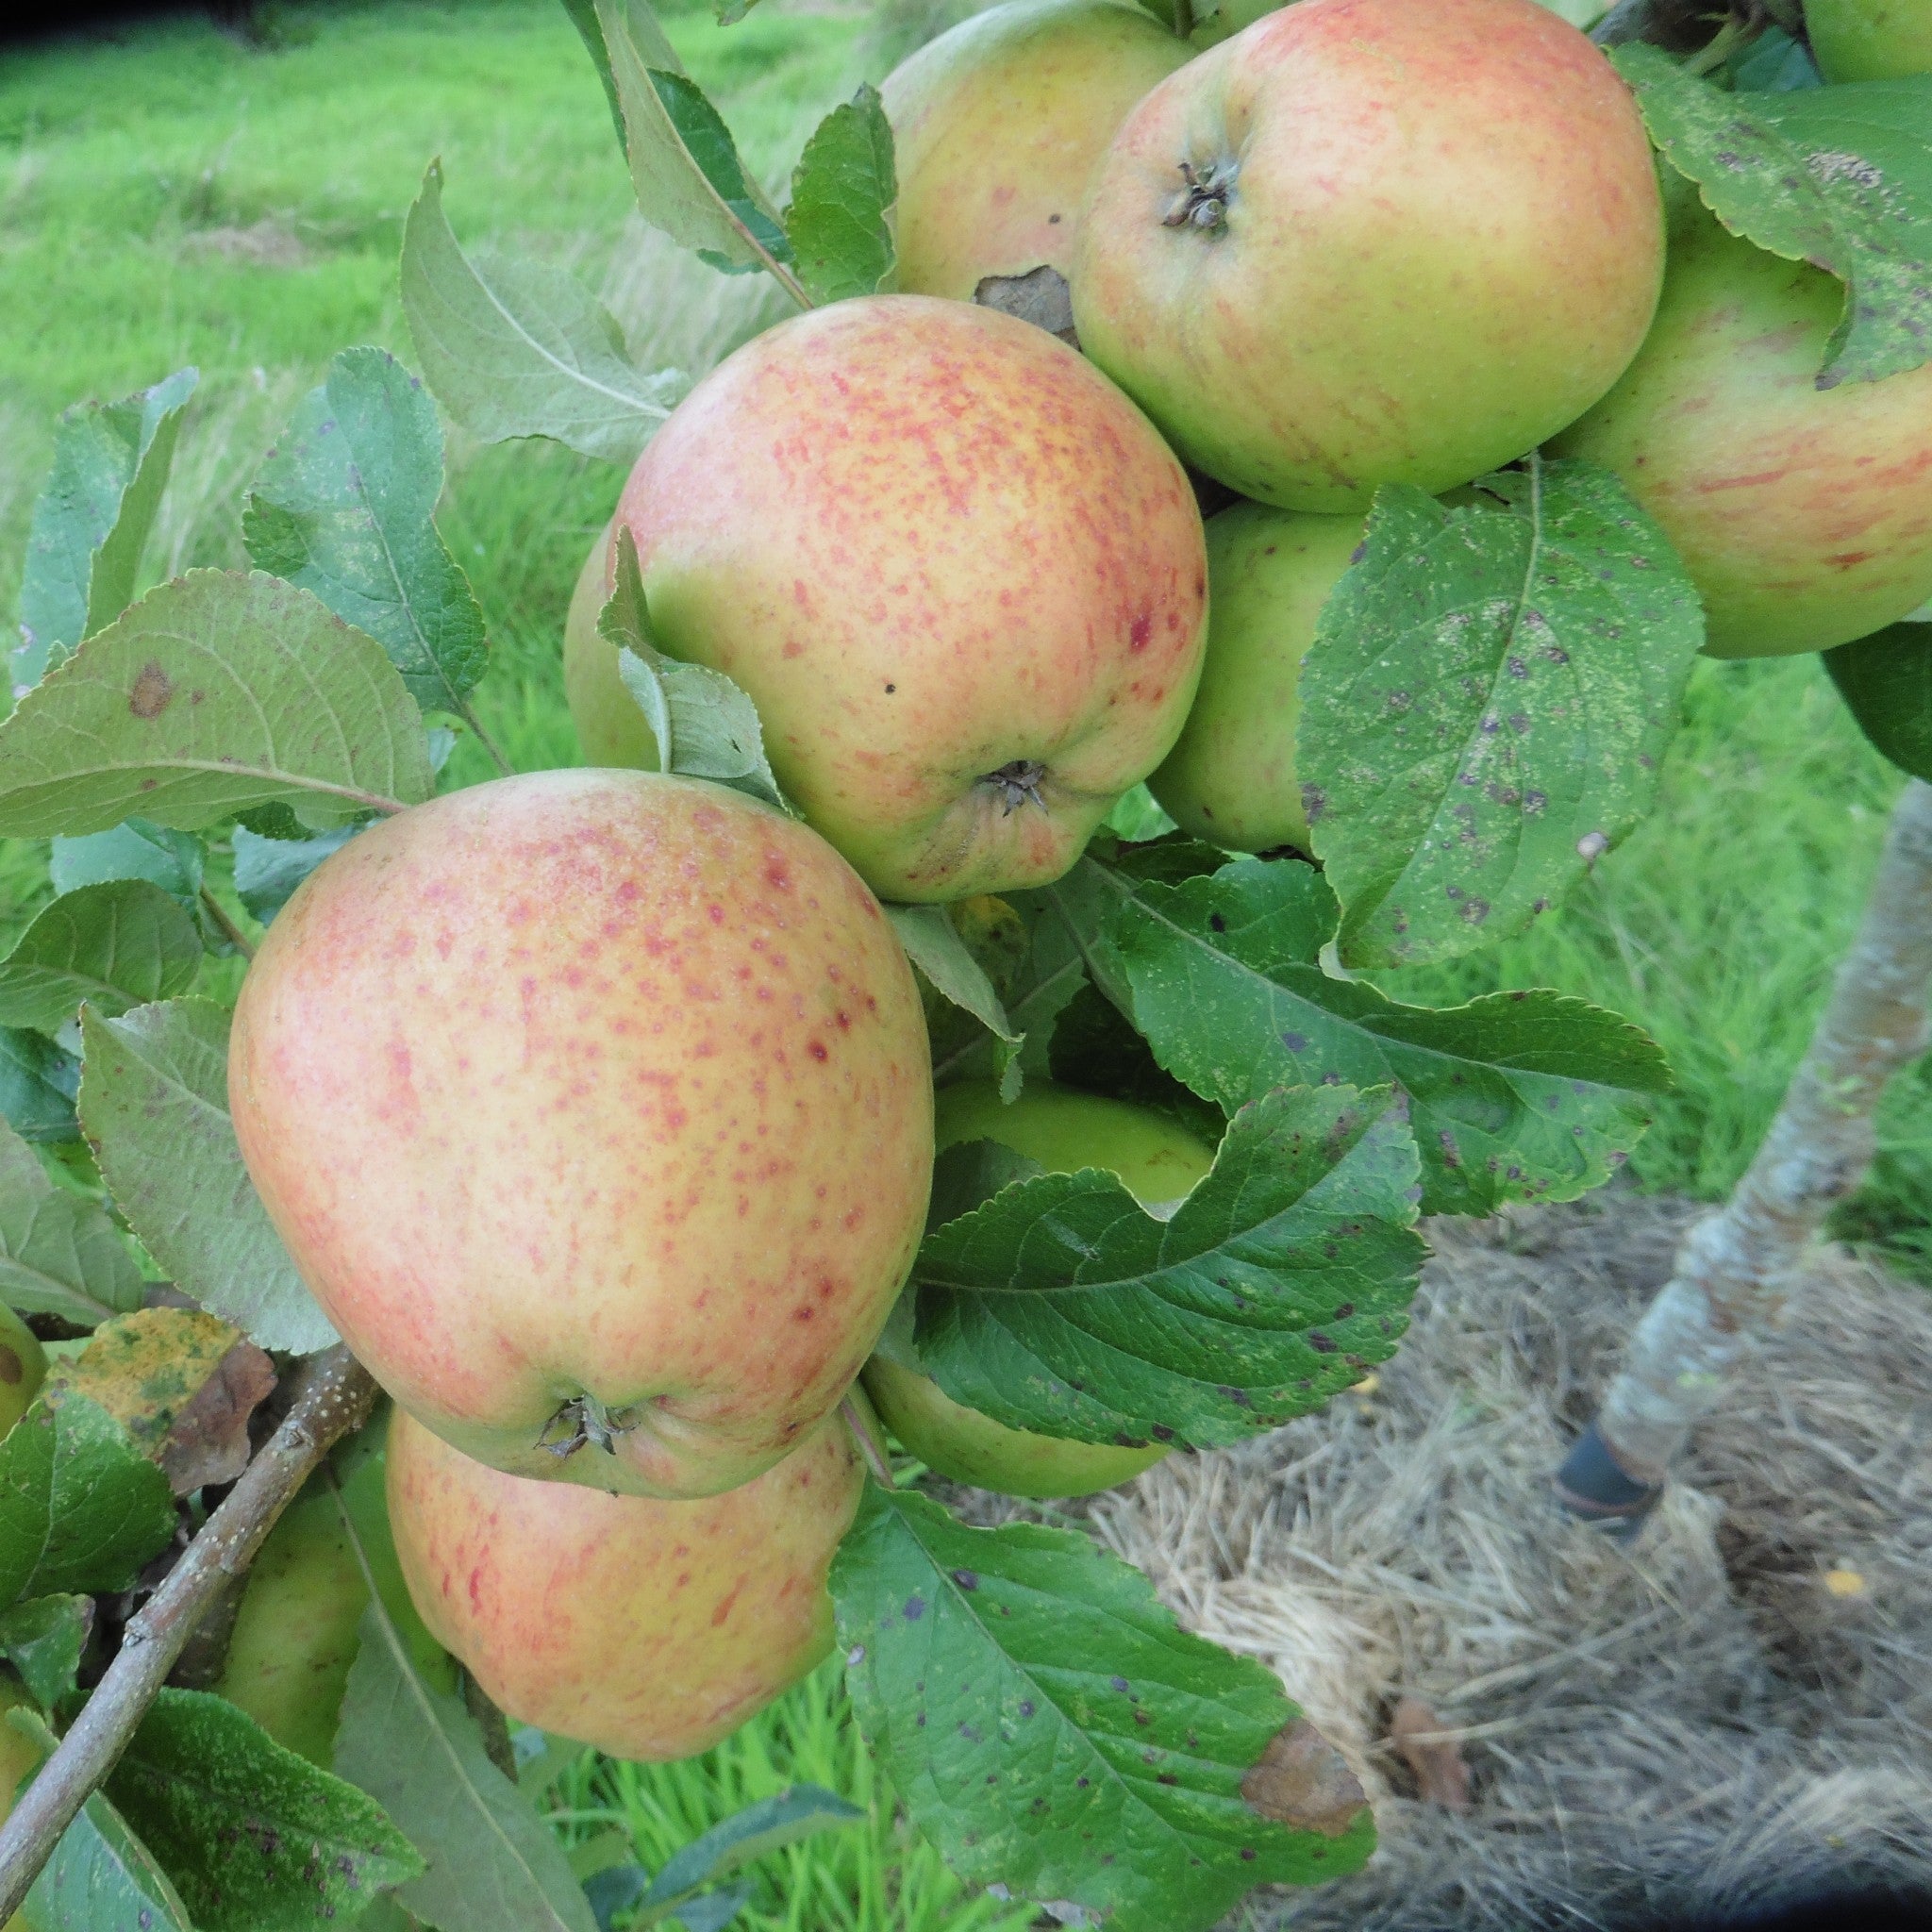 Pig yr Wydd apple tree